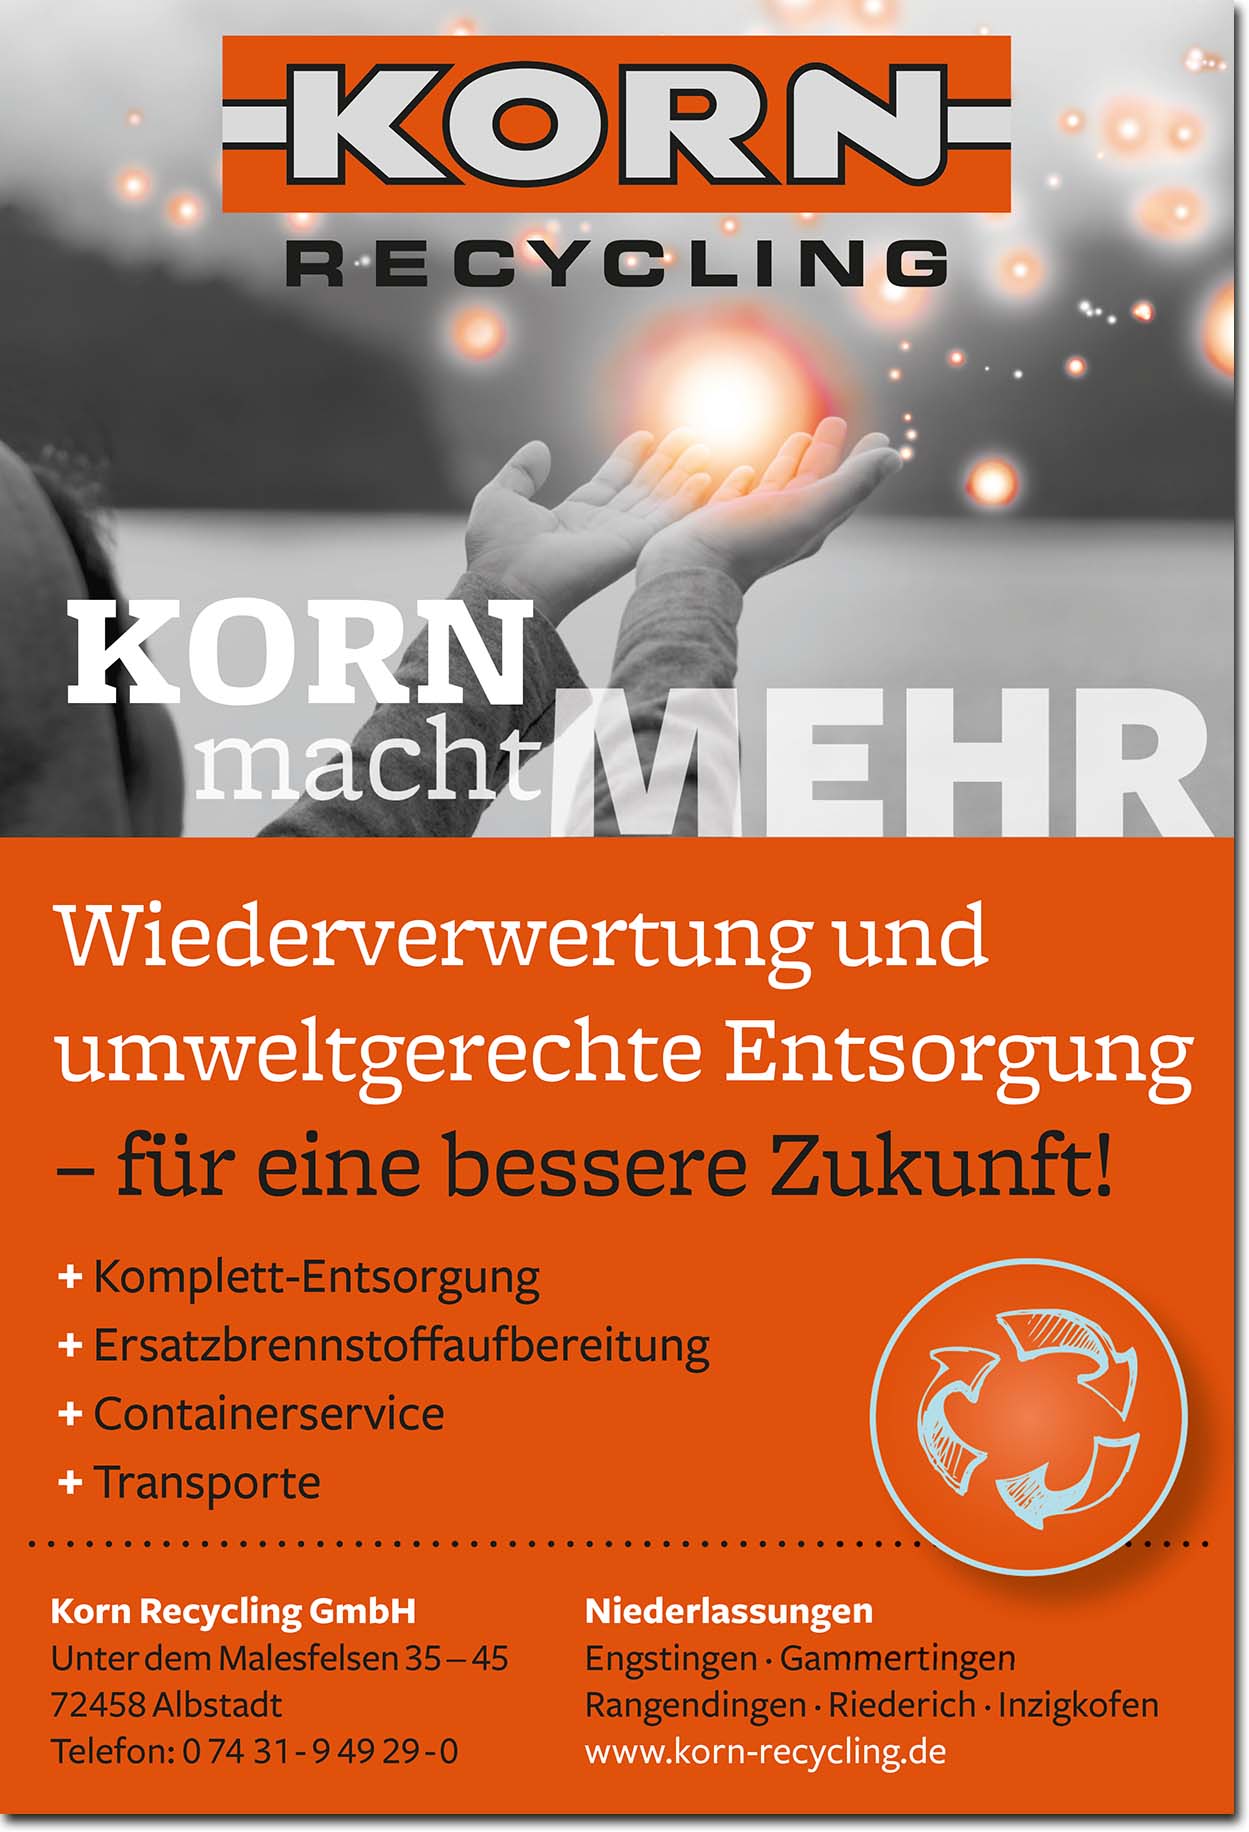 KORN Recycling GmbH